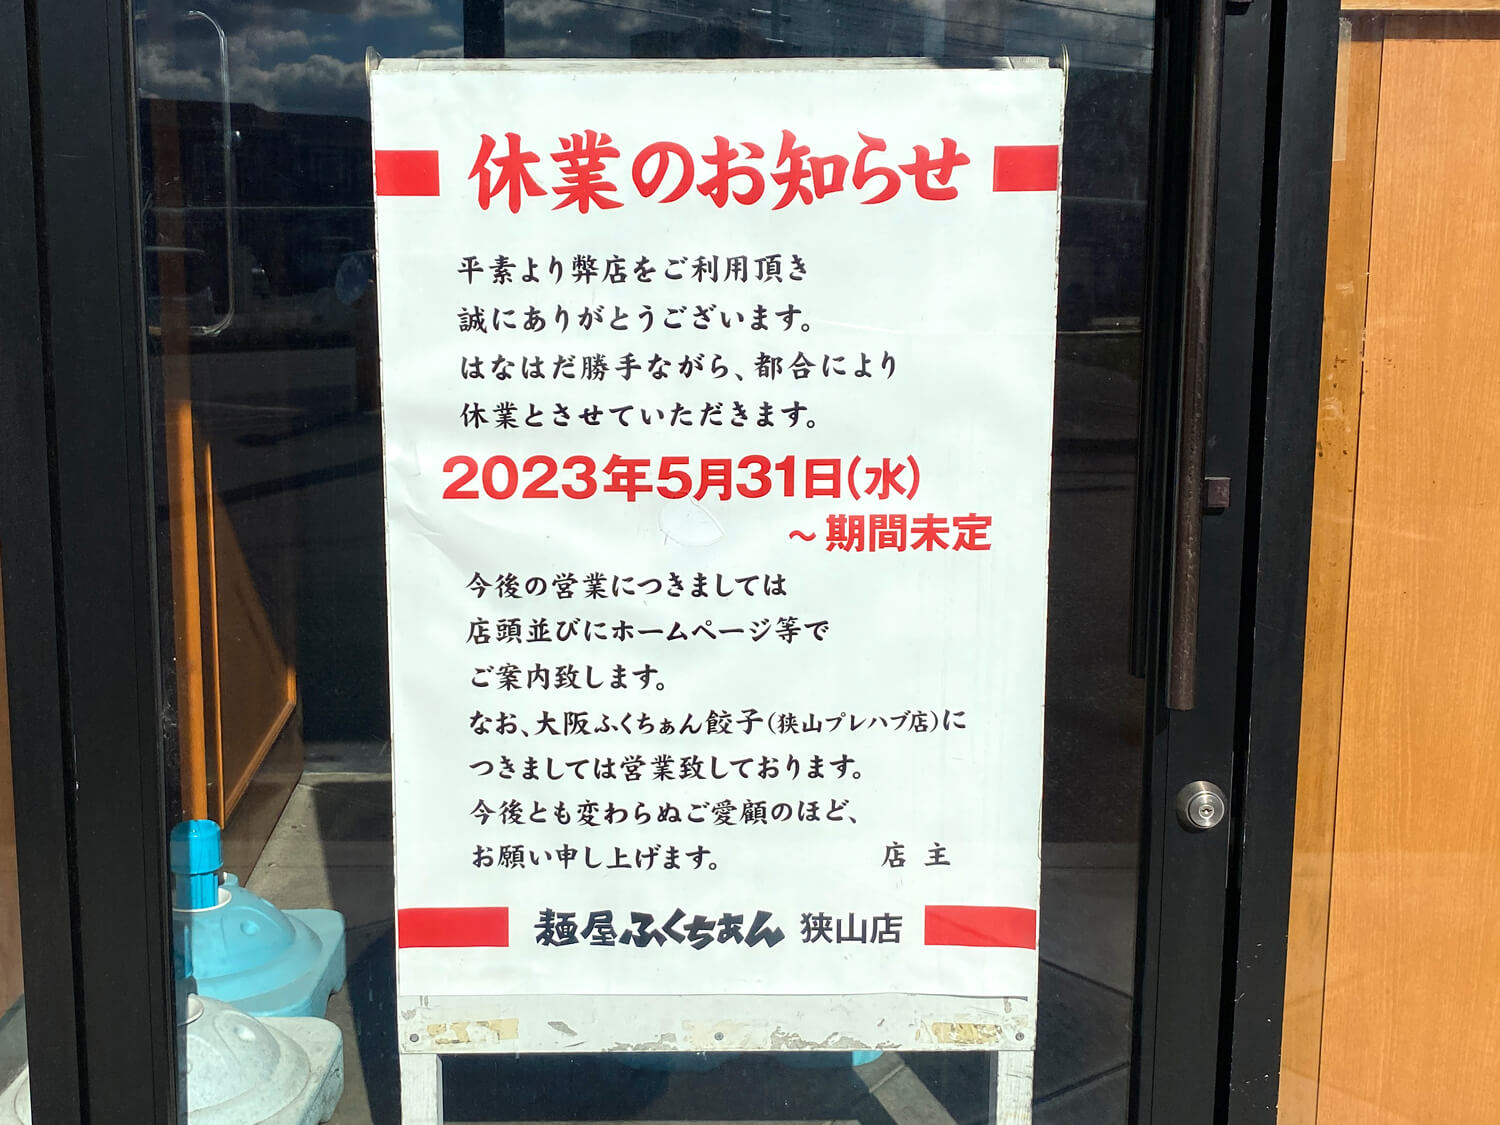 310号線沿い「麺屋ふくちぁん」が期間未定で休業中 (1)